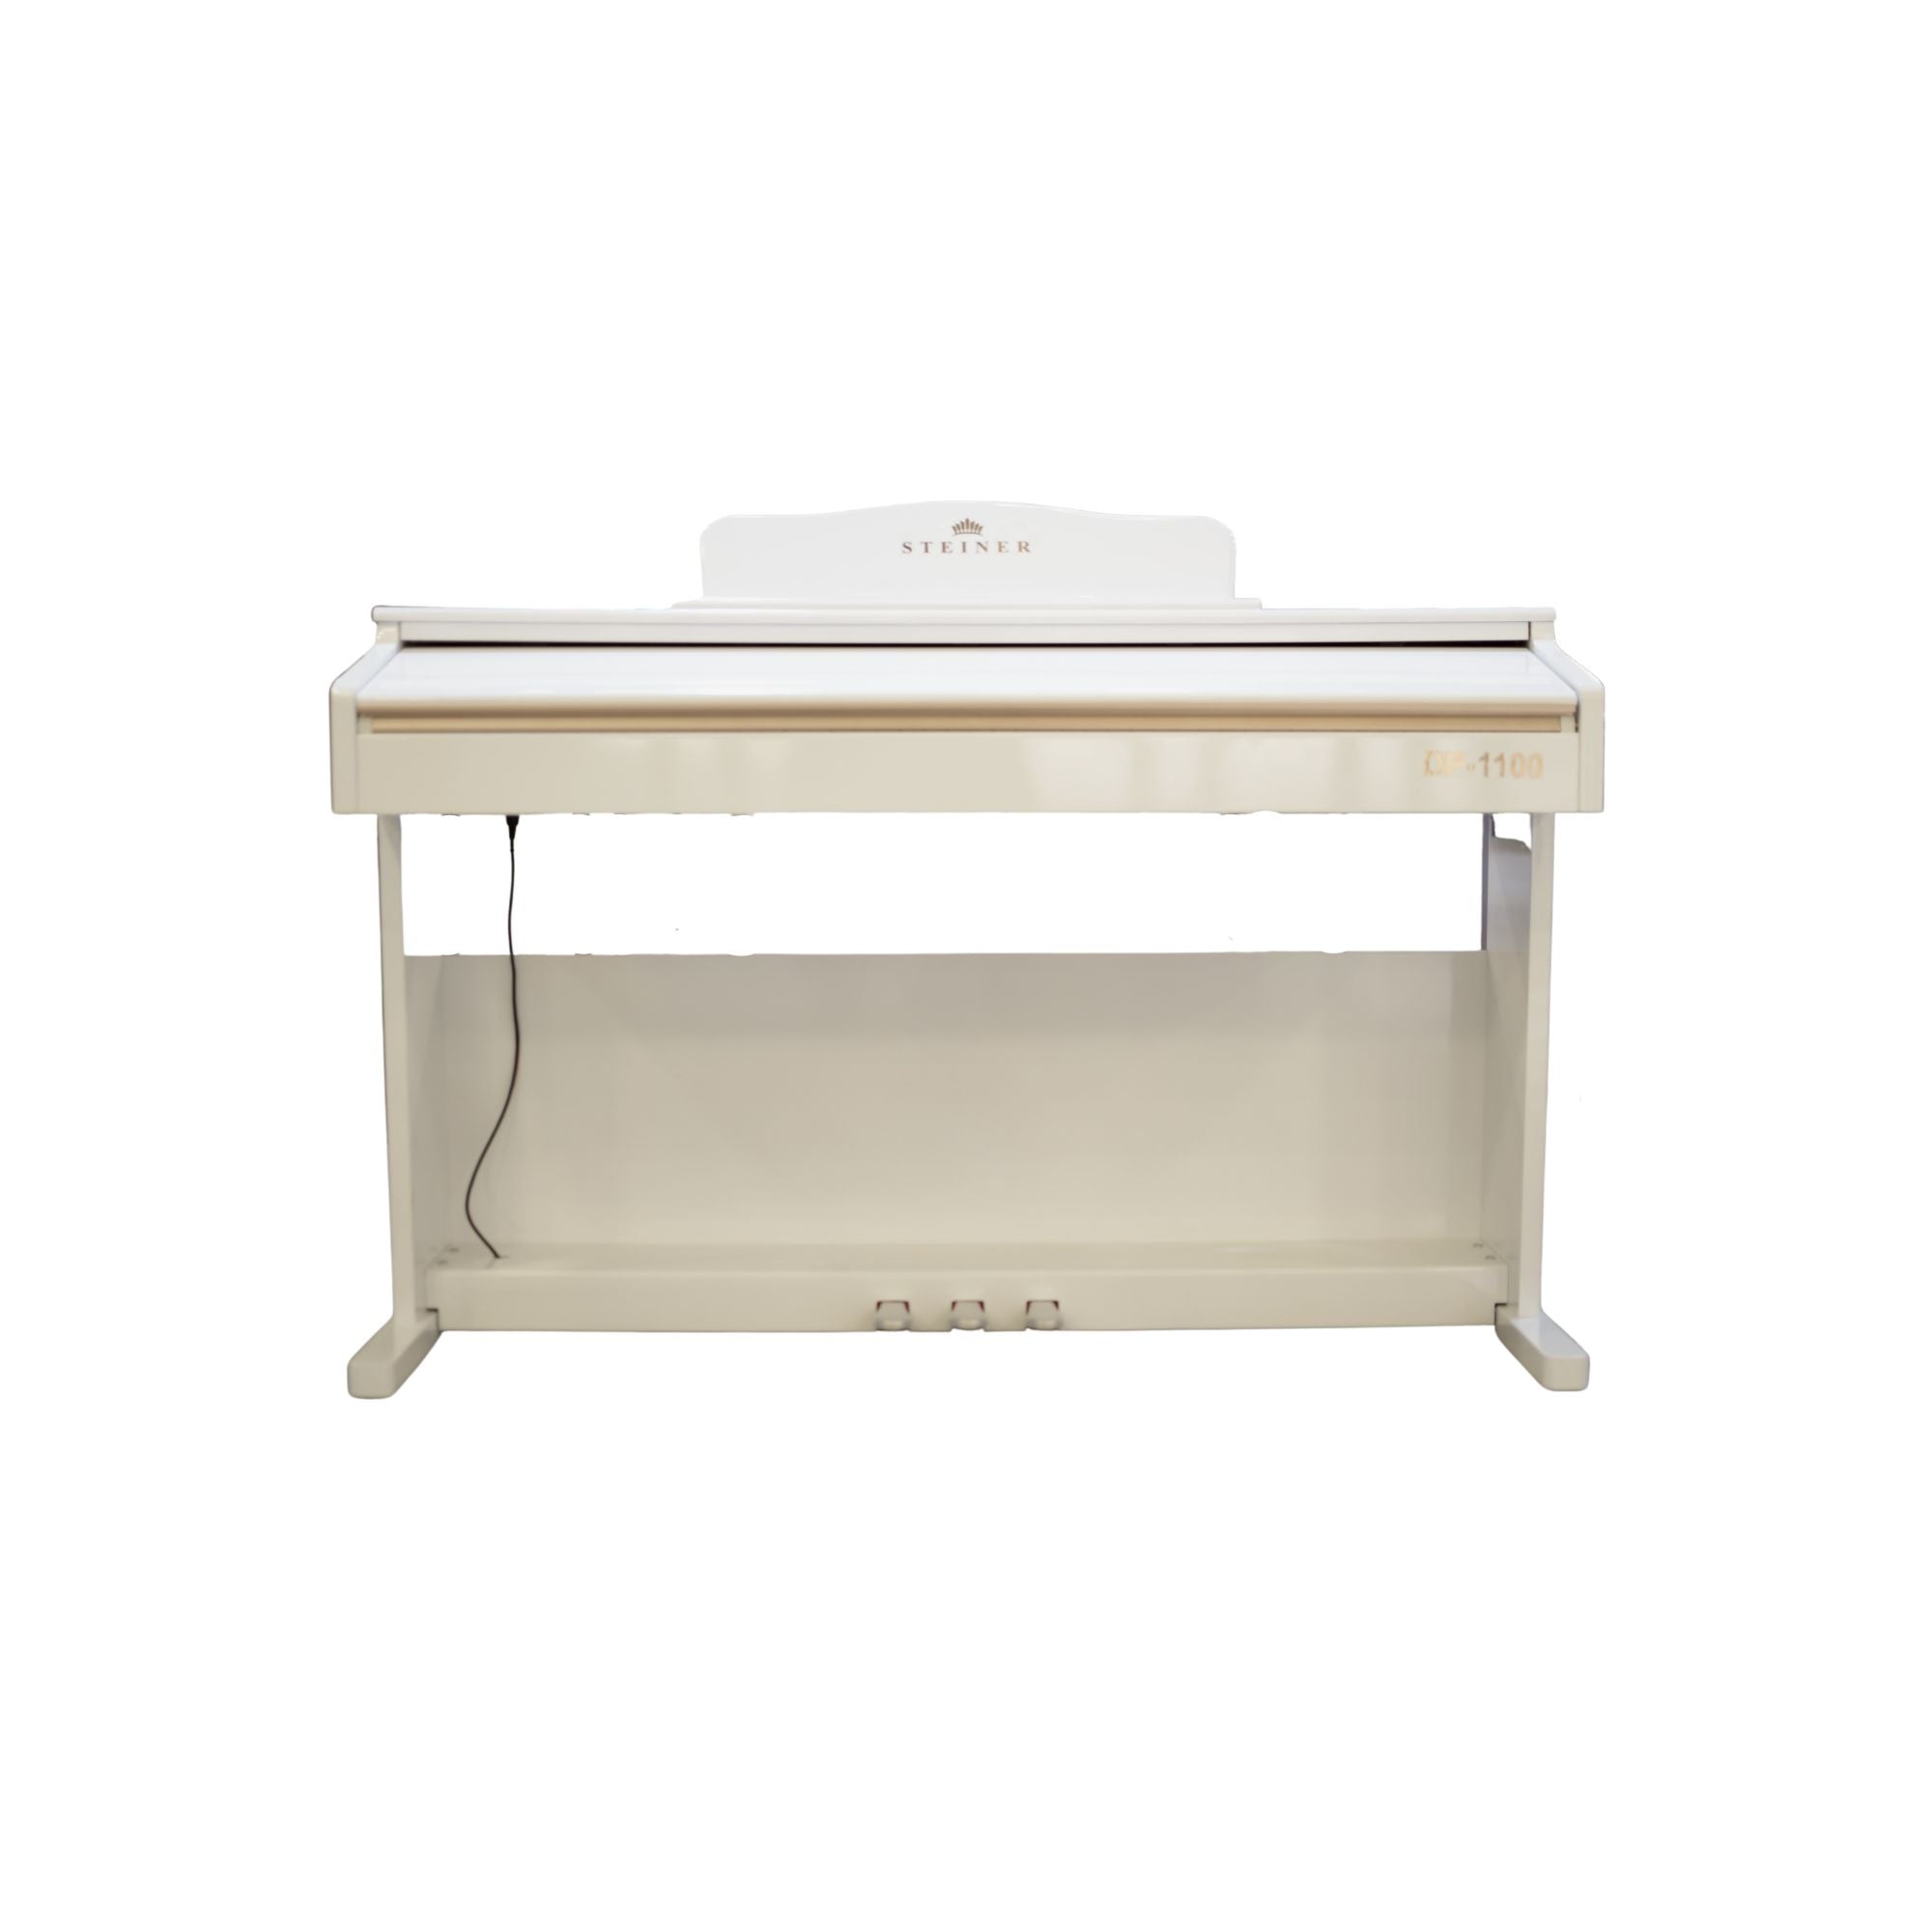 Steiner Digital Piano DP-1100W White